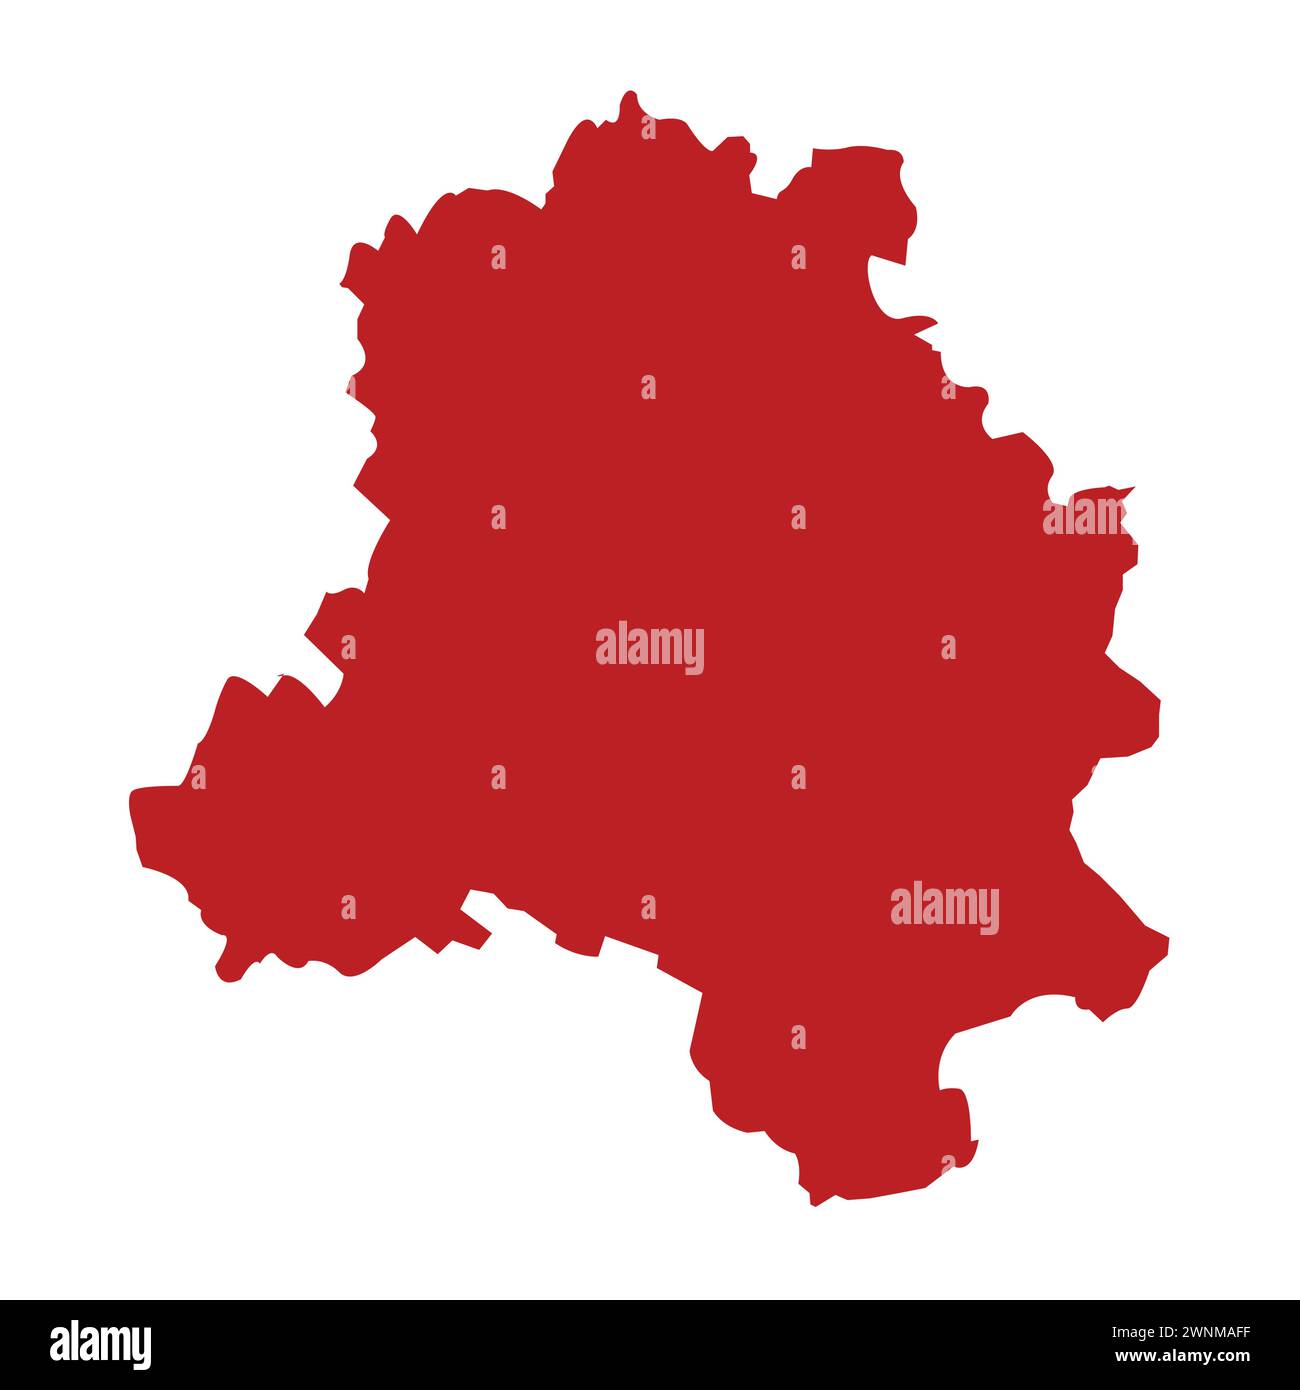 Delhi map vector illustration, indian Capital Delhi Stock Vector